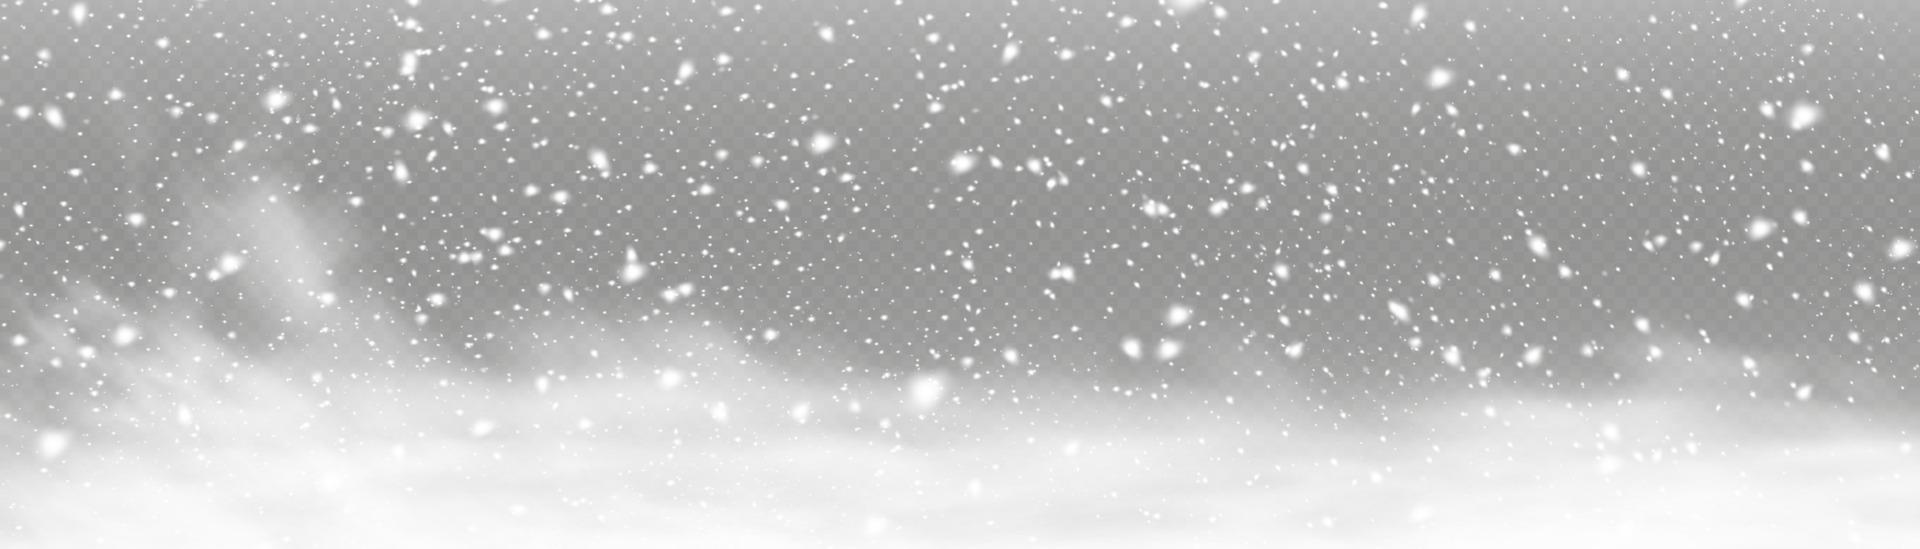 hiver et neige avec brouillard. vent et brouillard. neige et vent. élément décoratif dégradé blanc. illustration vectorielle. lumière, poussière, hiver, tempête de neige, Noël, vecteur. vecteur